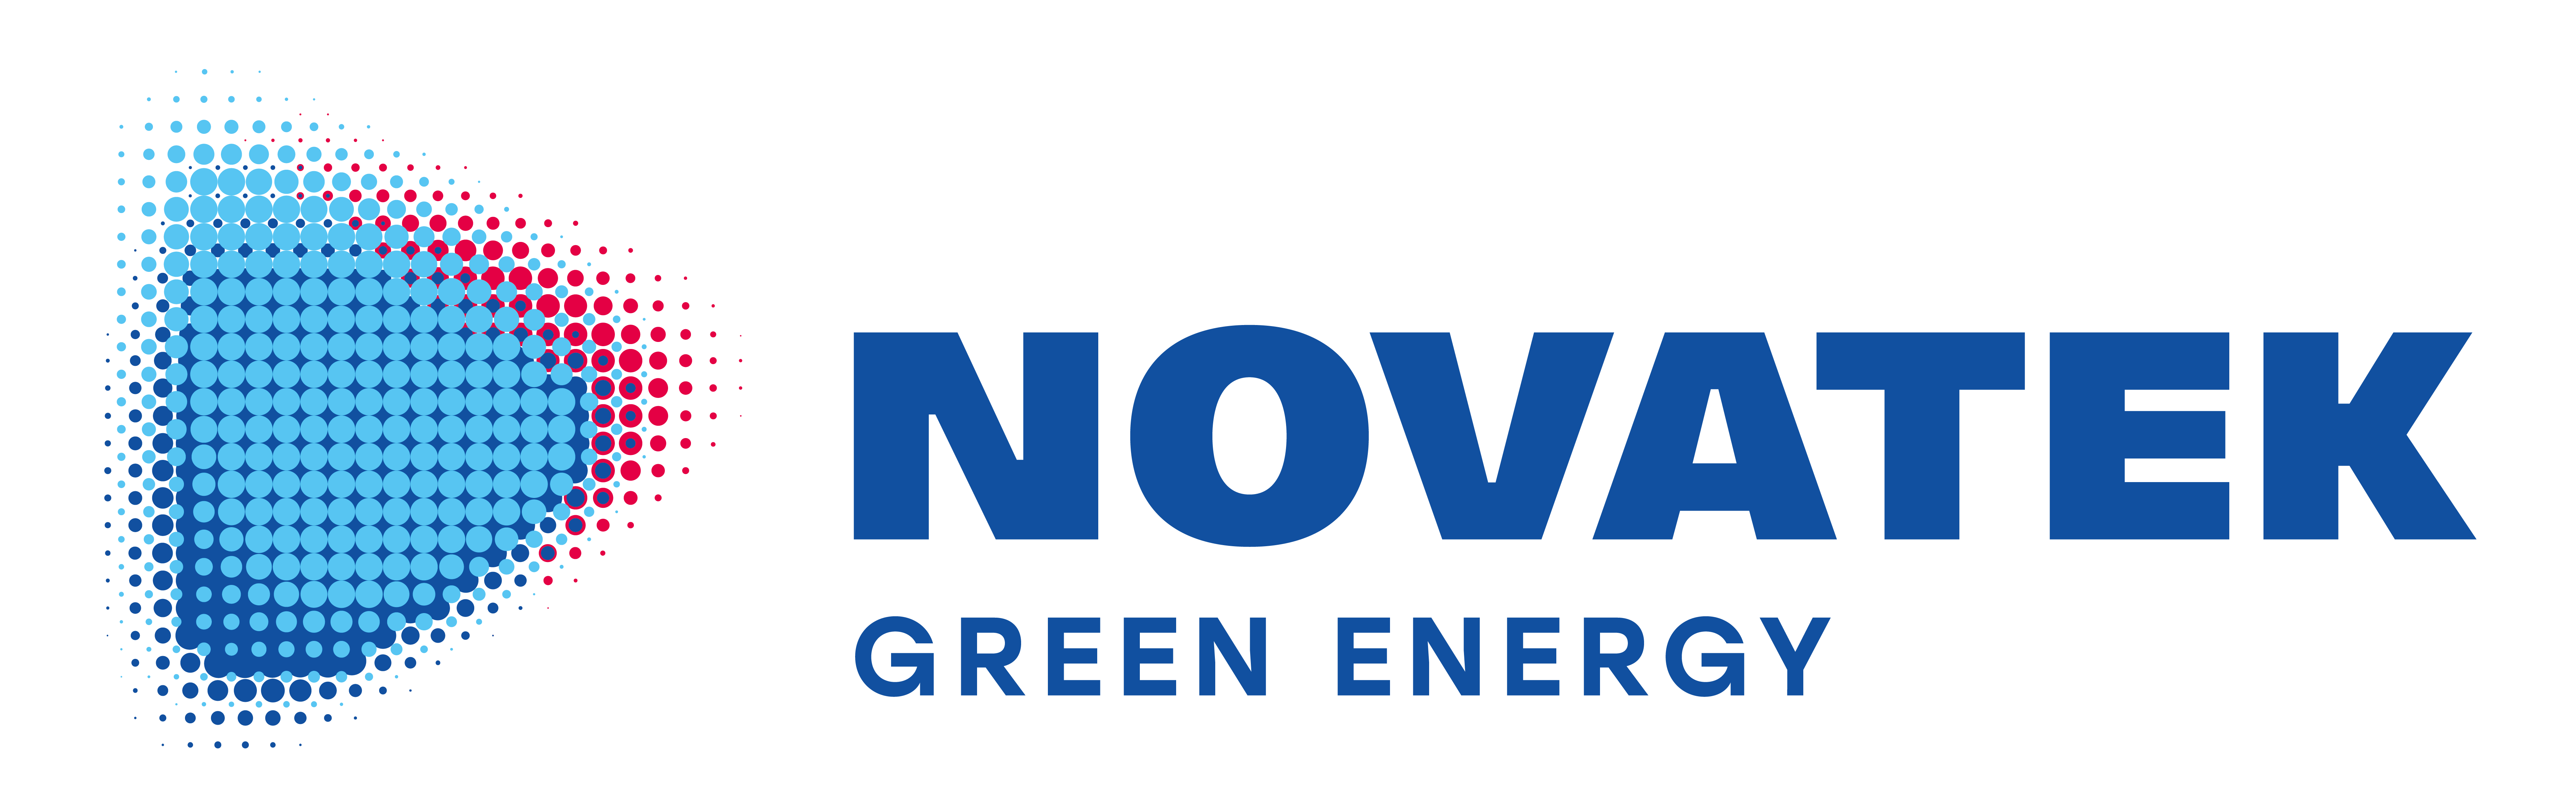 Logo Novatek Green Energy poziom